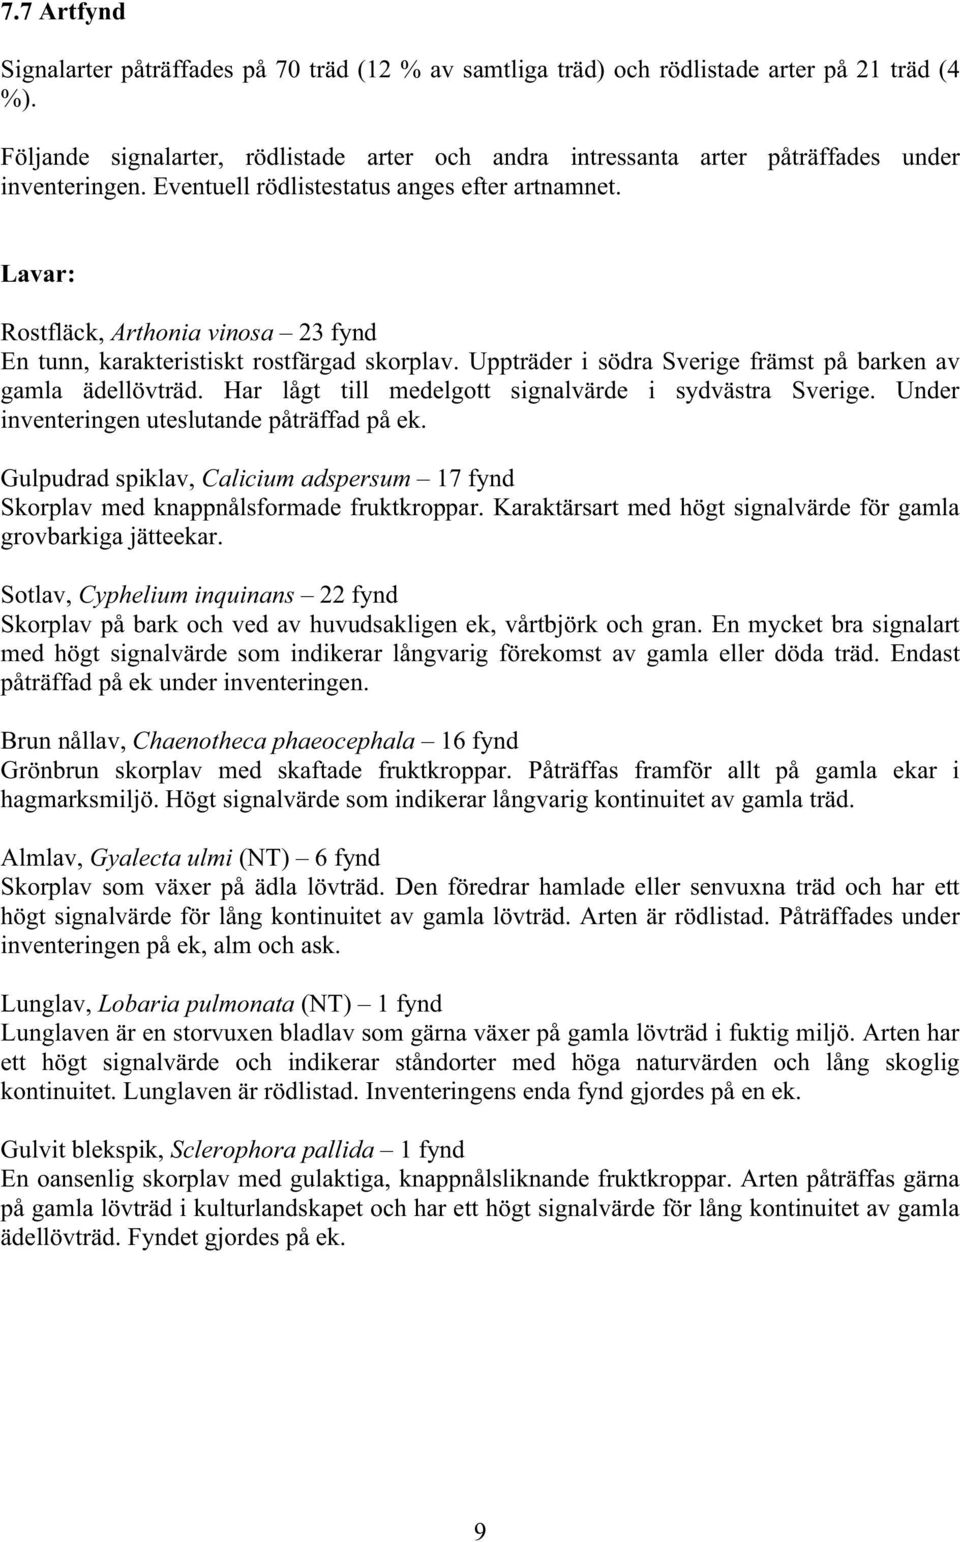 Lavar: Rostfläck, Arthonia vinosa 23 fynd En tunn, karakteristiskt rostfärgad skorplav. Uppträder i södra Sverige främst på barken av gamla ädellövträd.